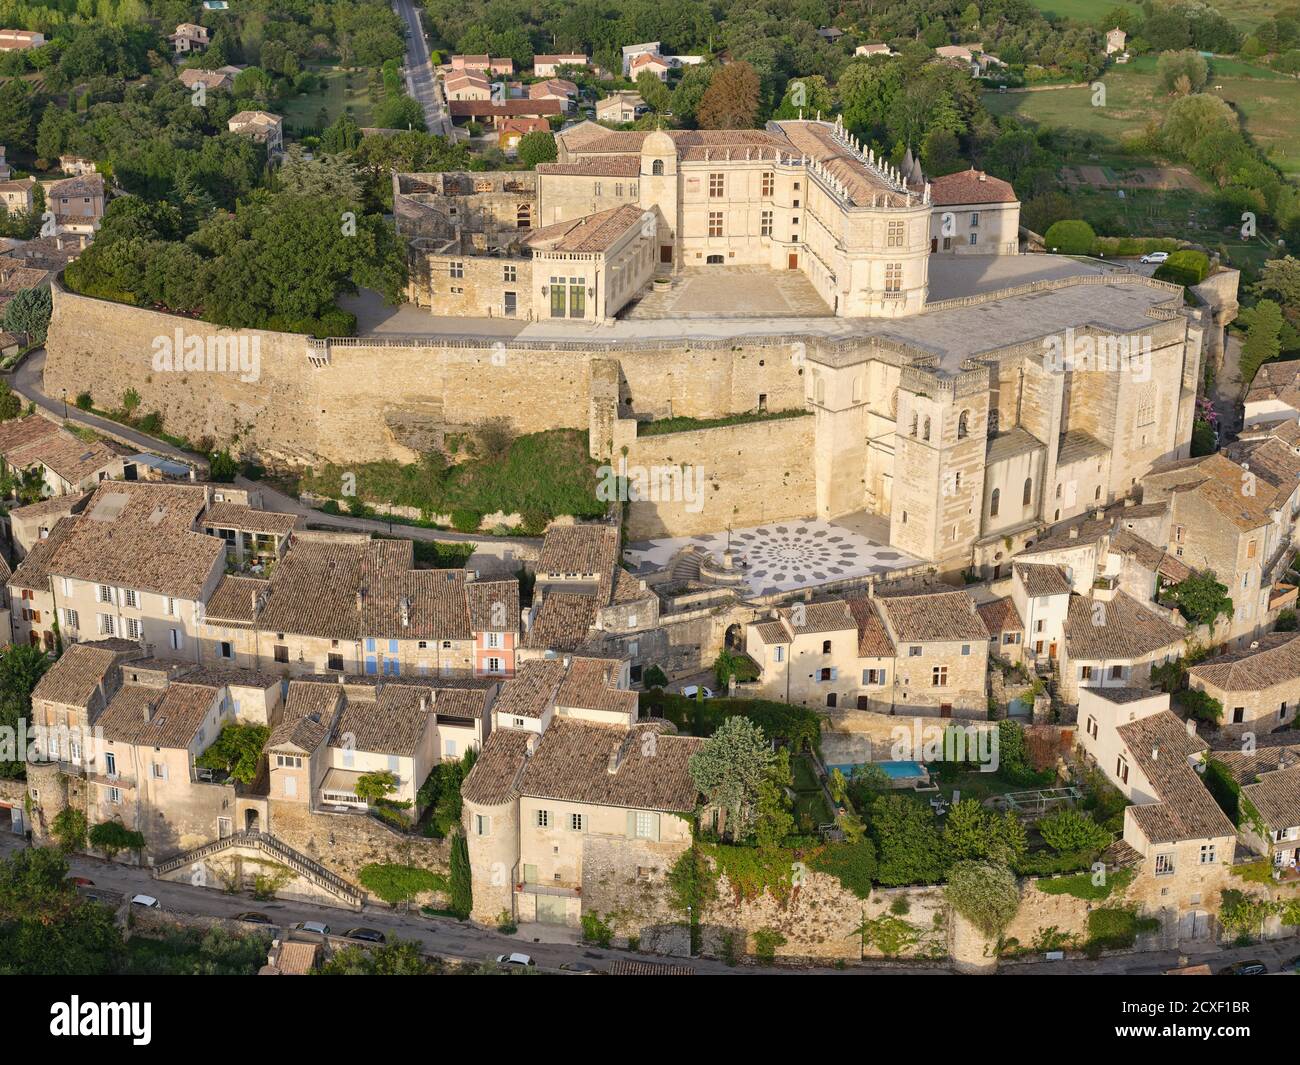 LUFTAUFNAHME. Mittelalterliche Burg auf einem felsigen Hügel, mit Blick auf das alte Dorf gebaut. Schloss Grignan, Drome, Auvergne-Rhône-Alpes, Frankreich. Stockfoto